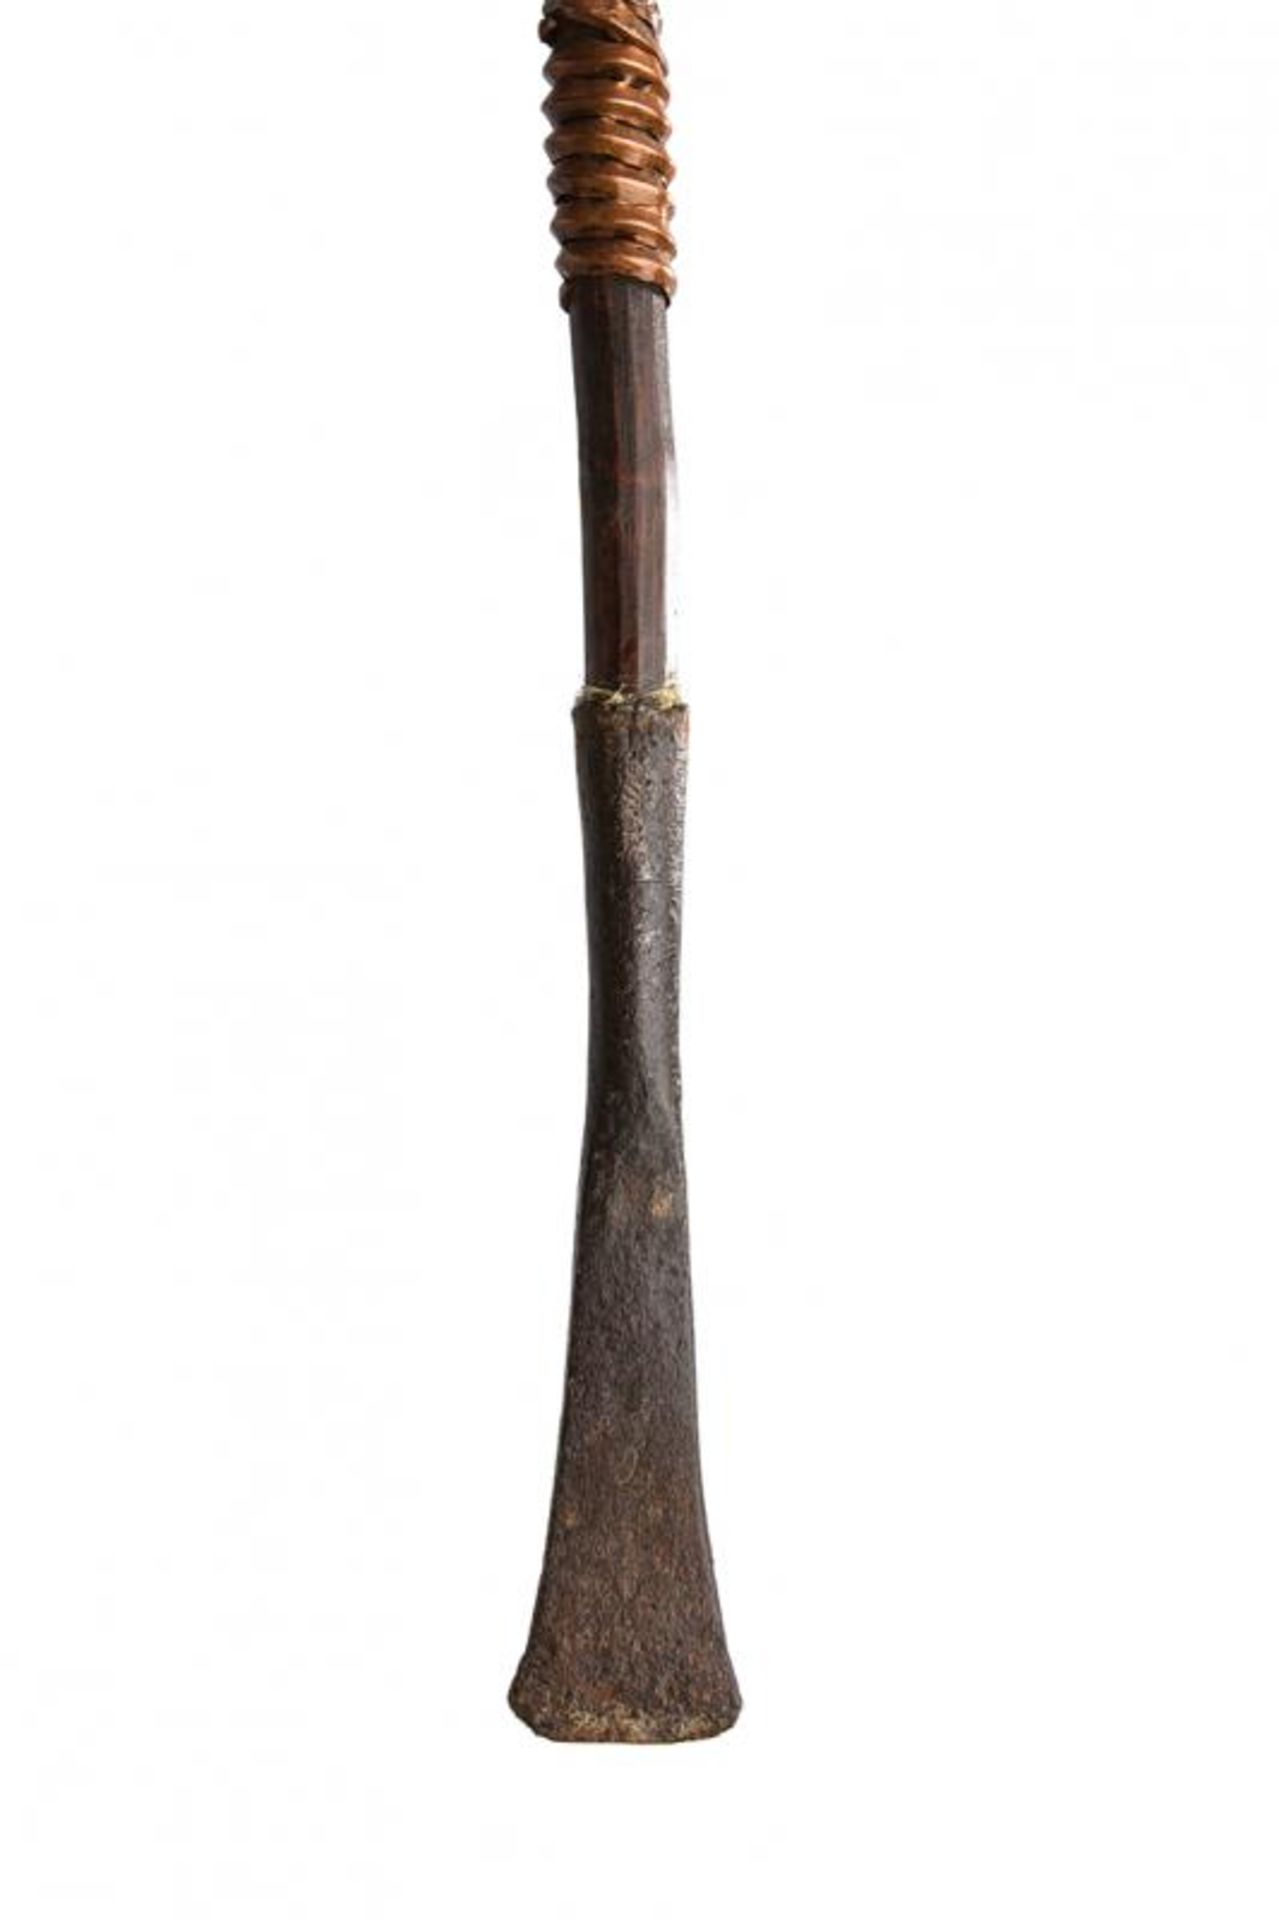 A Masai lance - Image 4 of 5